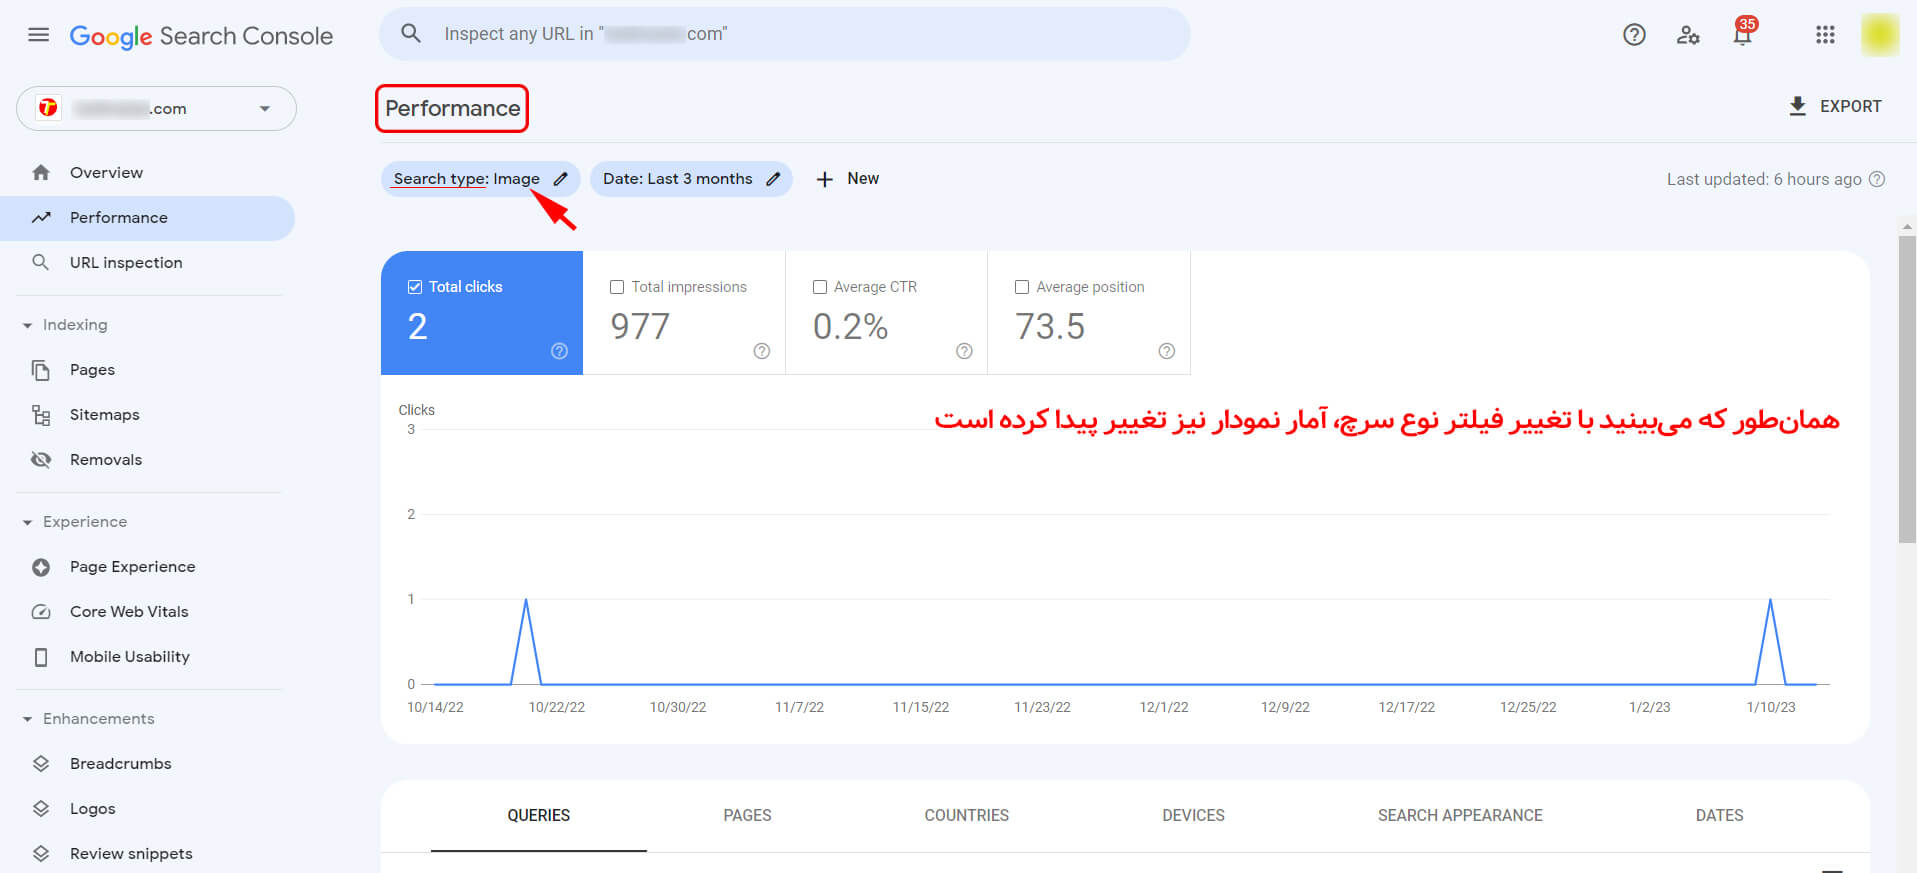 نمودار مربوط به آمار بازدید تصاویر پس از اعمال فیلتر Image در پنجره Search Type در داشبورد گوگل سرچ کنسول